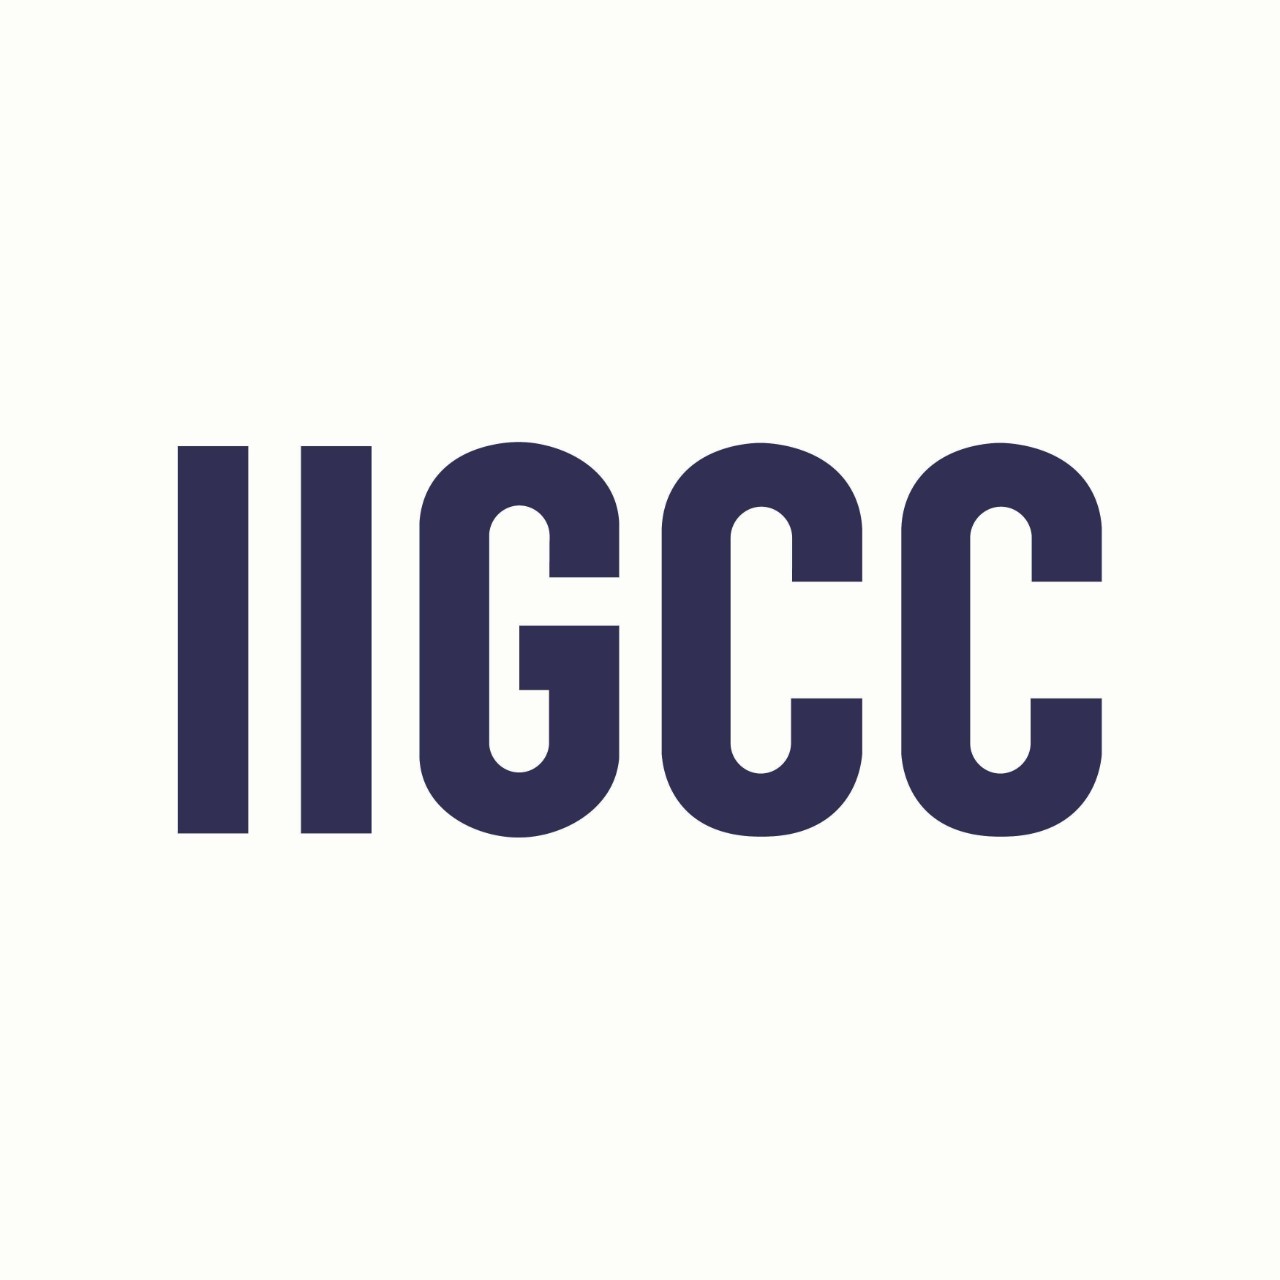  IIGCC website - Nouvelle fenêtre